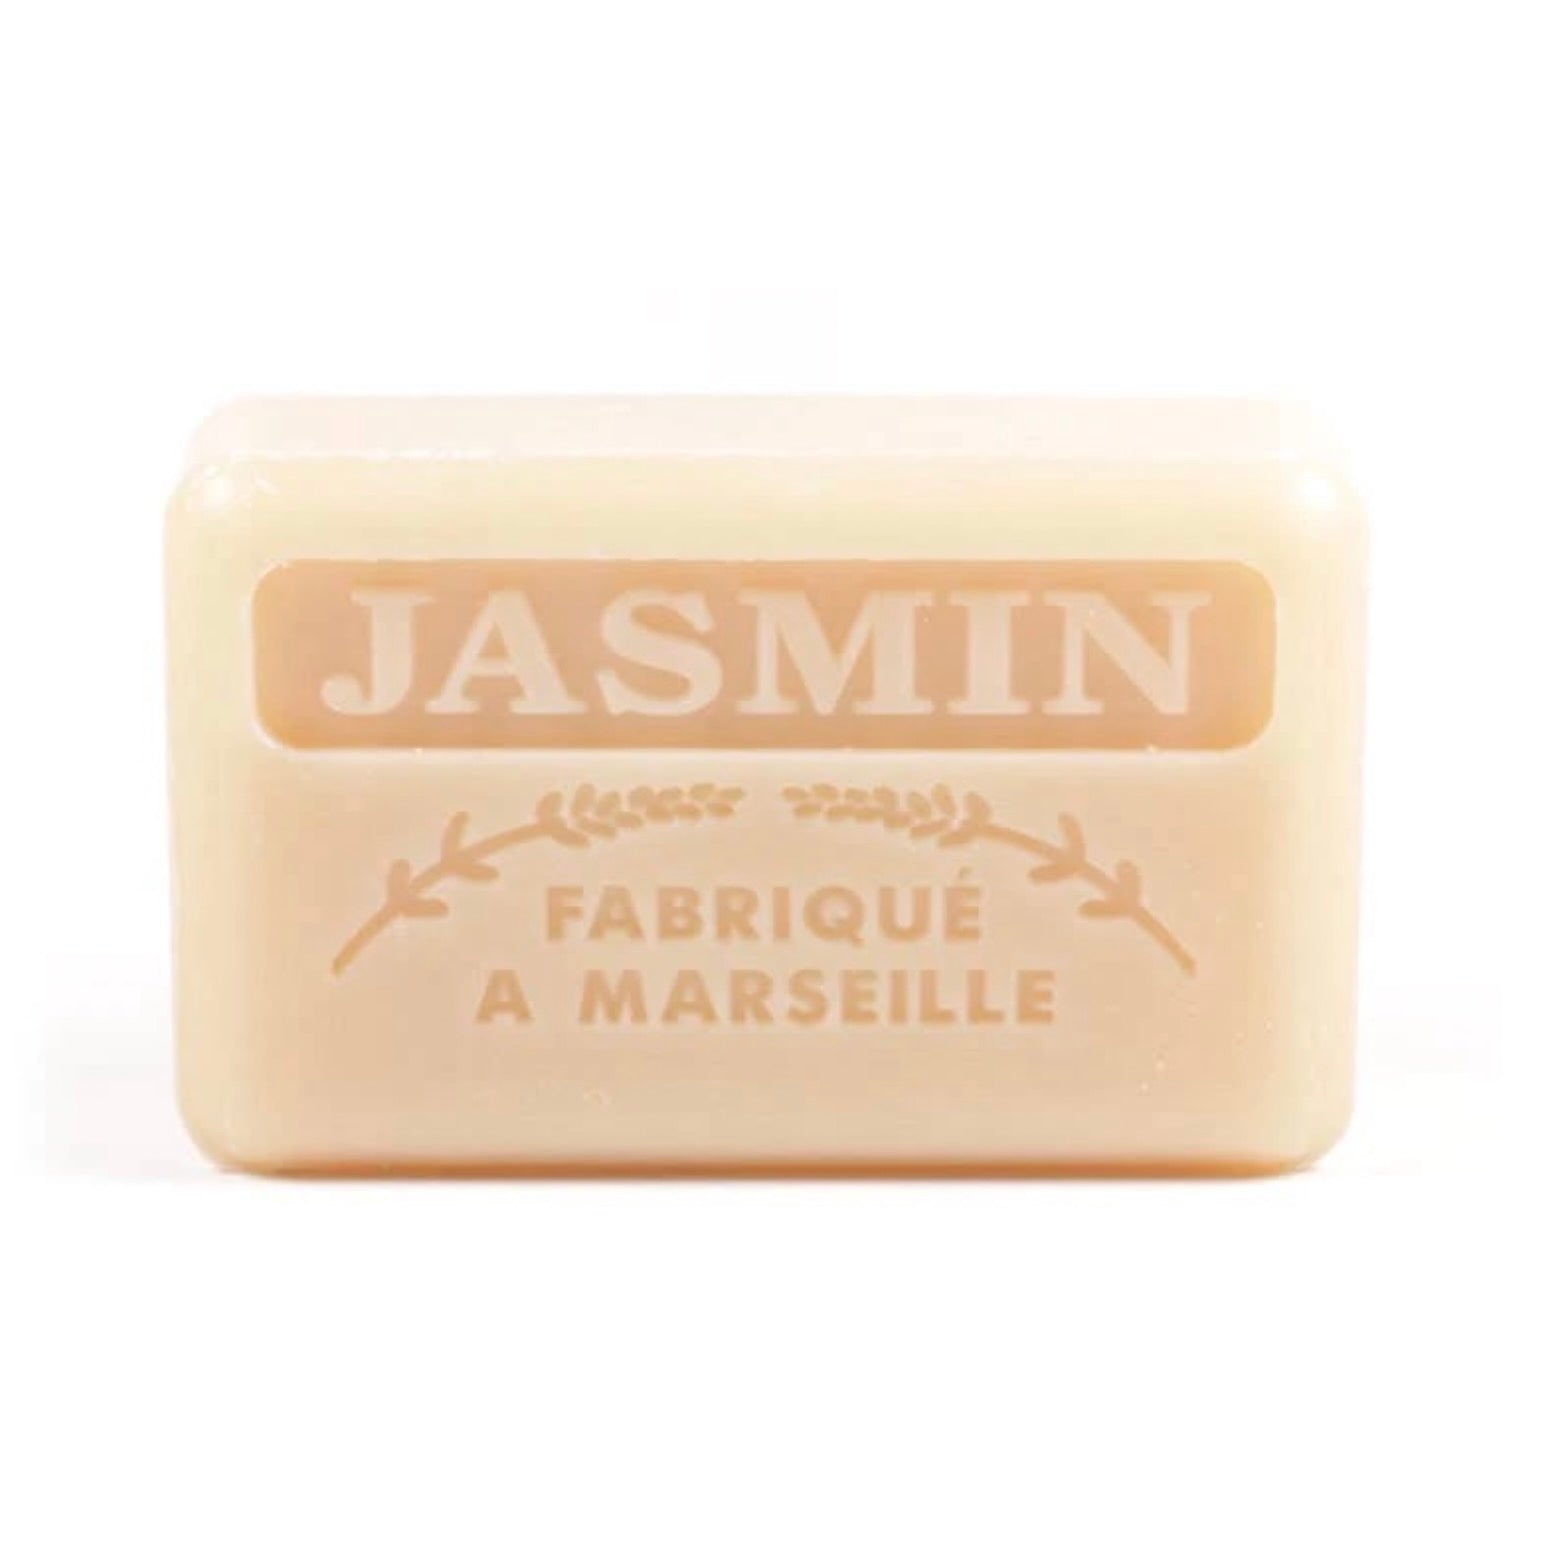 Jasmine French Soap 125g